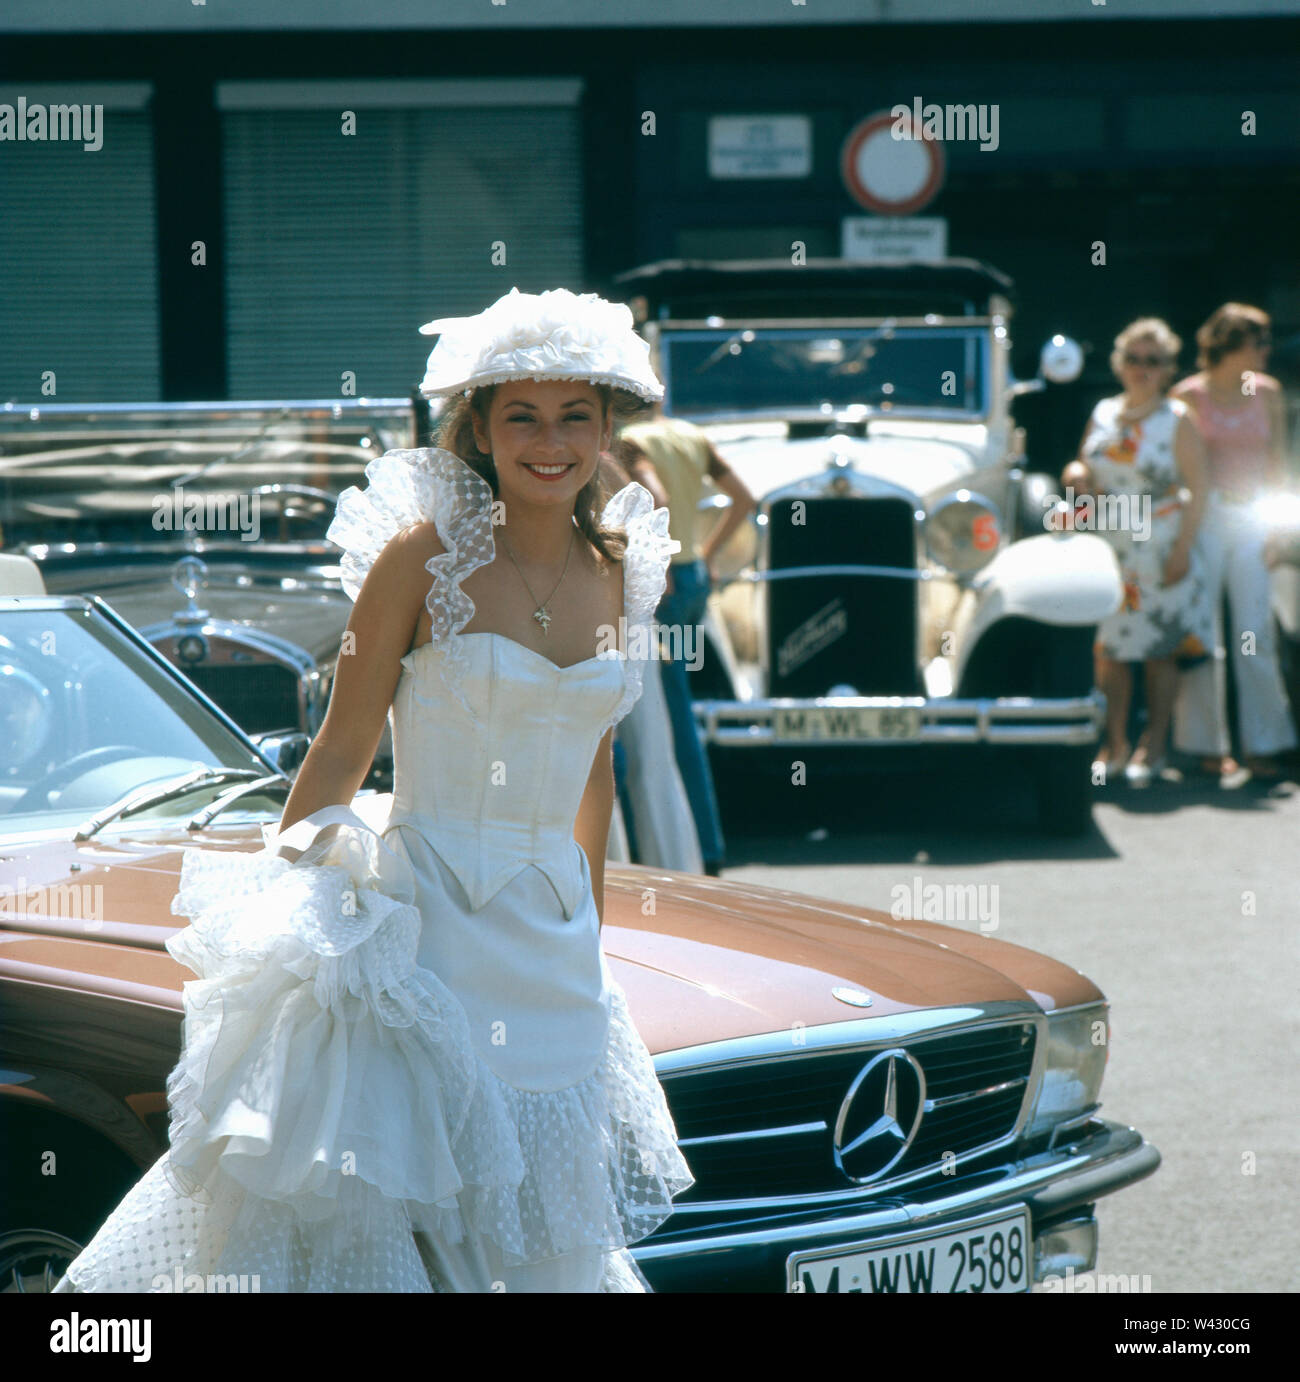 Eine junge Frau im Hochzeitskleid während einer Oldtimermesse in München in den 1980er Jahren.  A young woman in wedding dress during a vintage car fair in Munich in the 1980s. Stock Photo